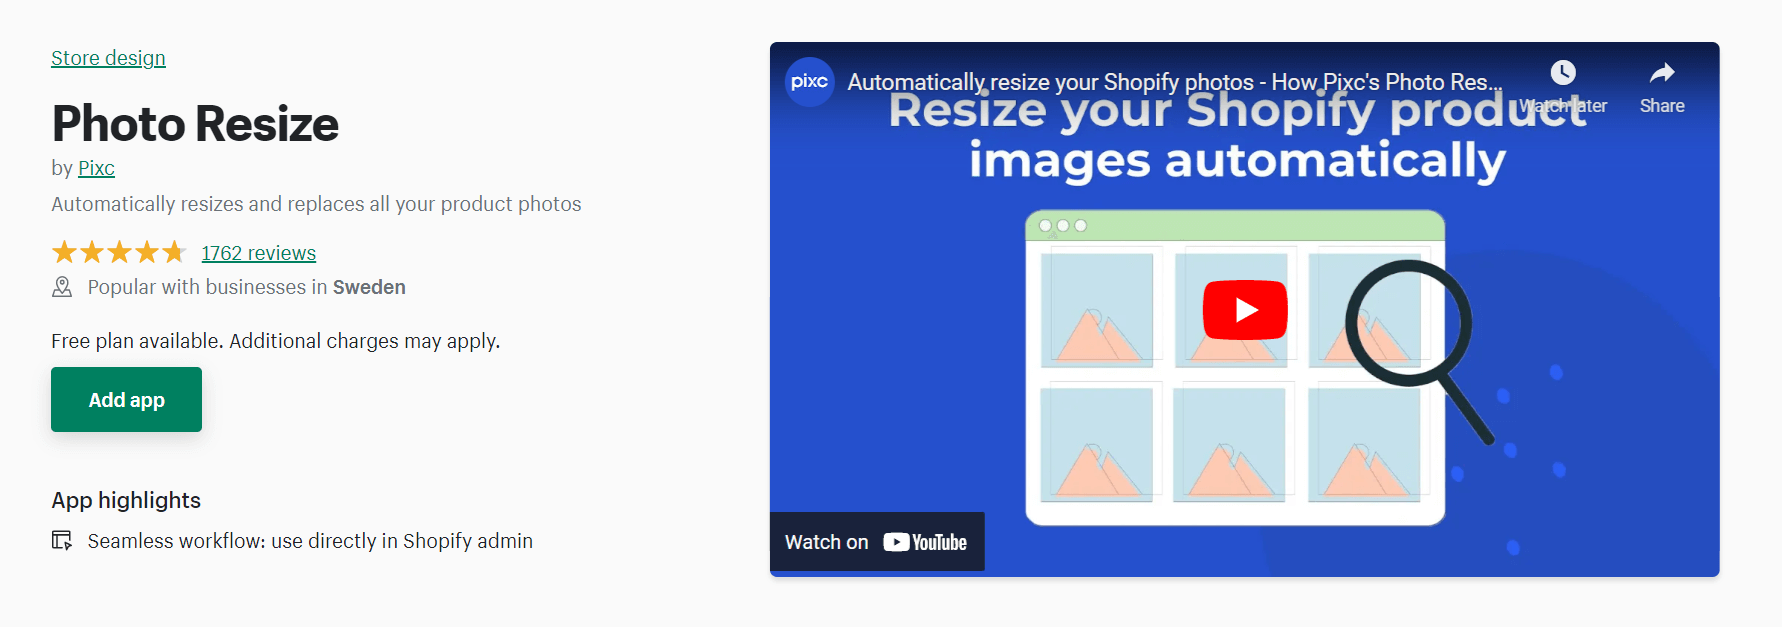 Photo Resize image editor shopify app